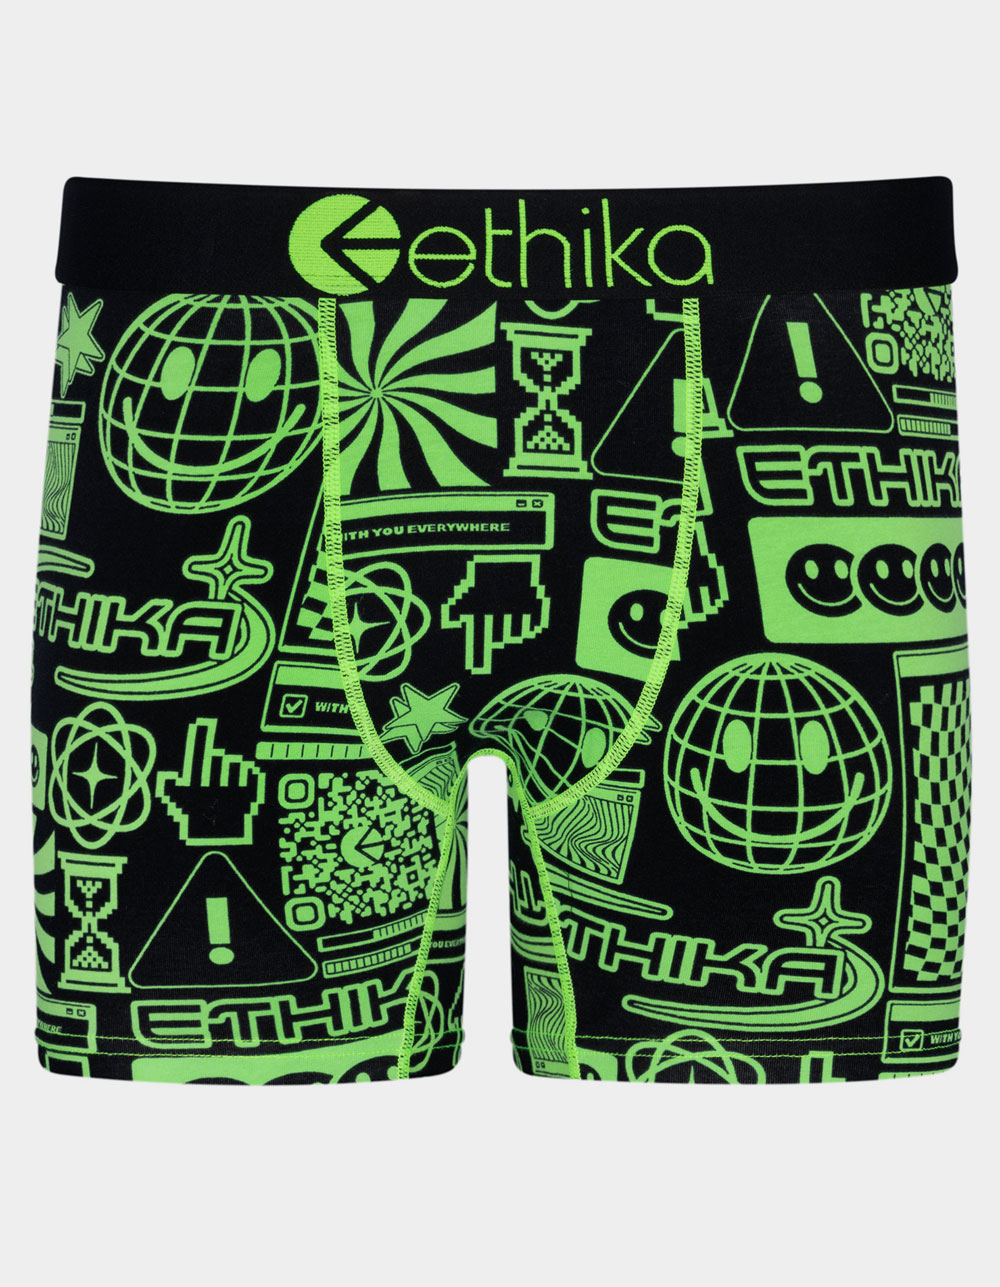 Ethika Bmr Anime Boxer Briefs, Underwear, Clothing & Accessories